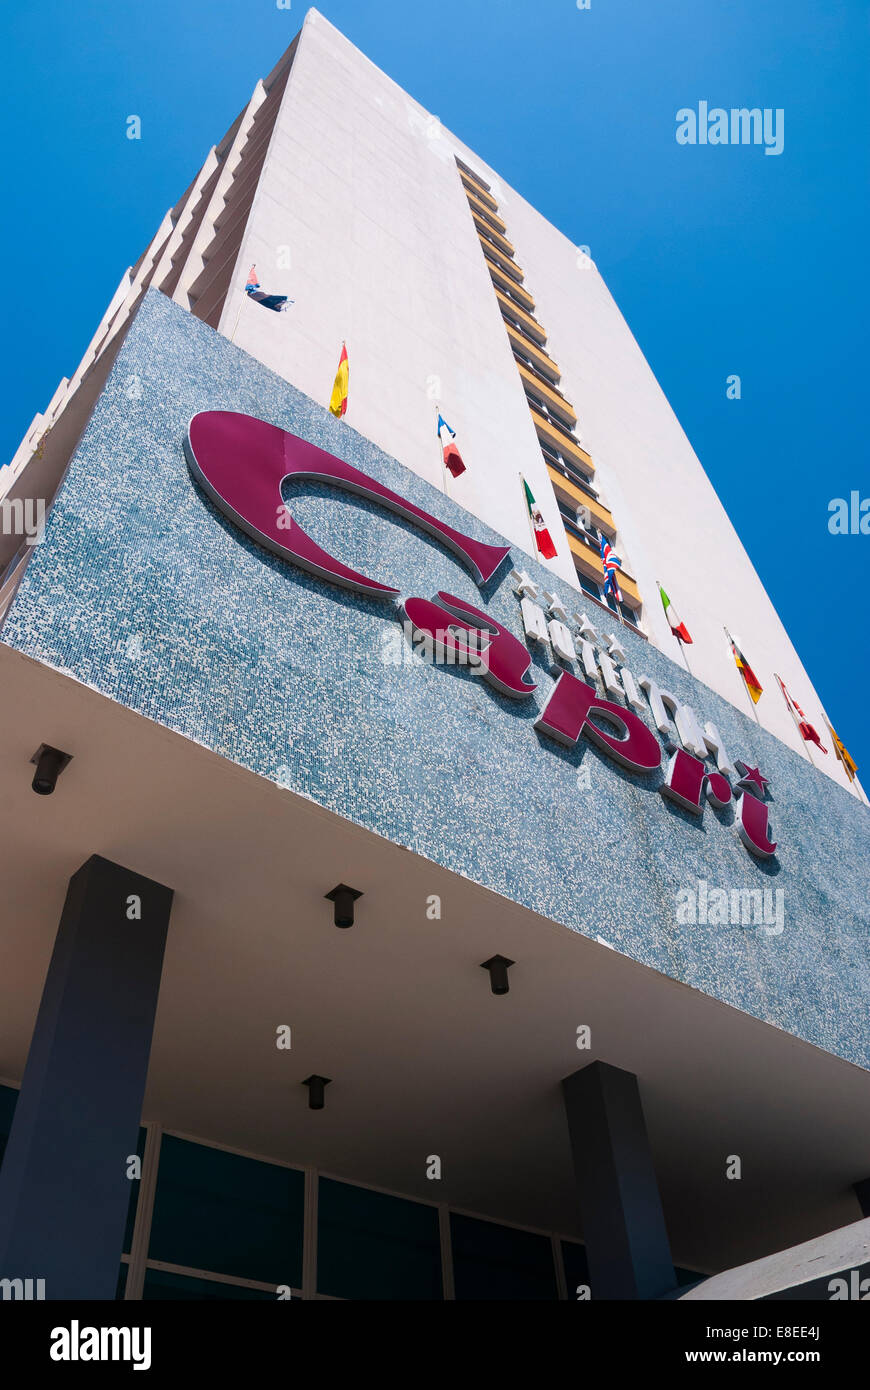 Das Capri Hotel in Havanna, einer ehemaligen 50er Jahre mob Hangout, wurde im Jahr 2013 nach umfangreichen Renovierungsarbeiten wiedereröffnet Stockfoto